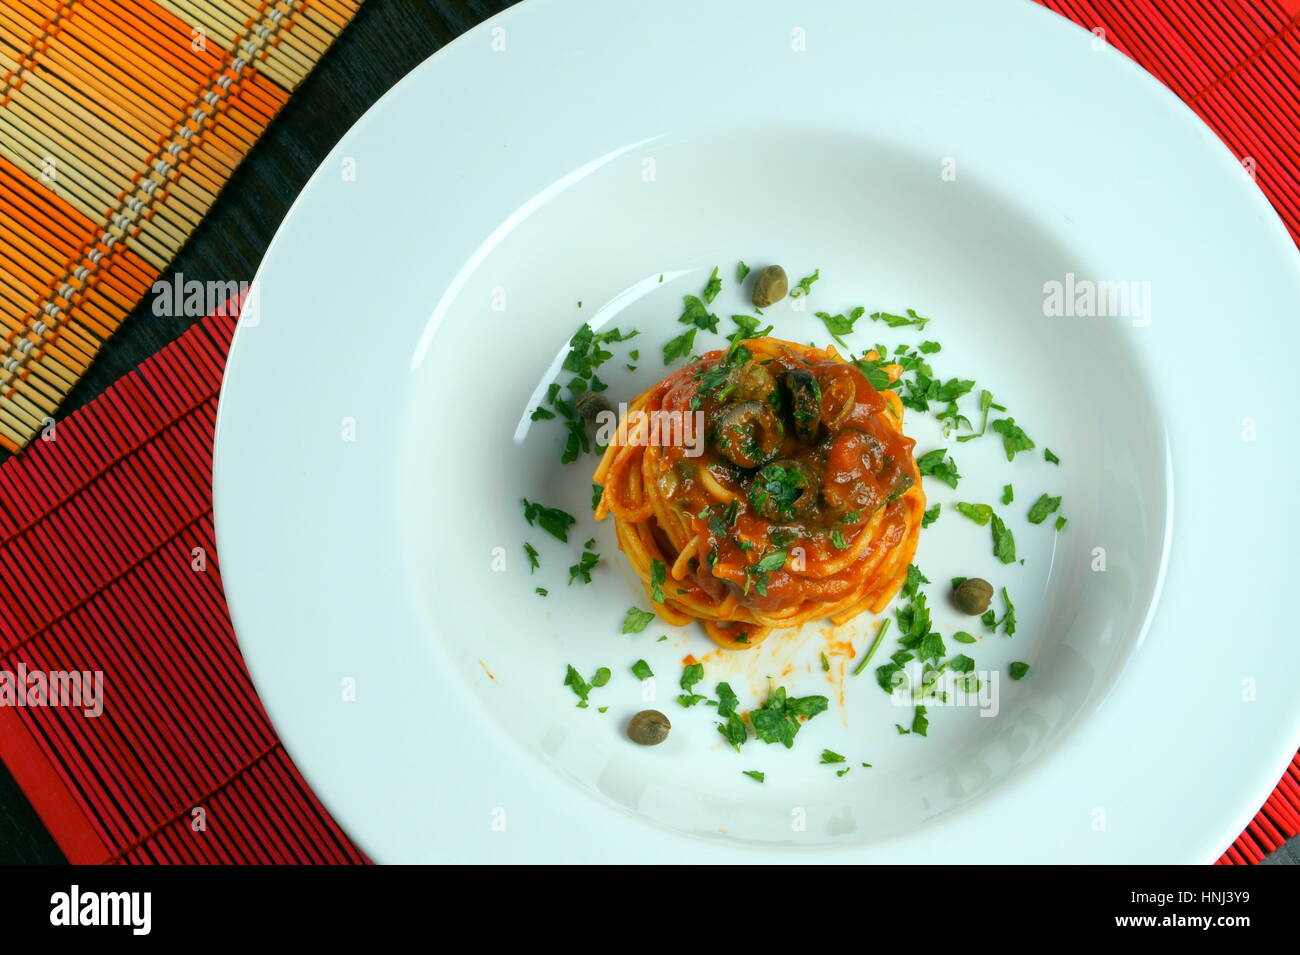 Spaghetti Puttanesca auf bunte Tischsets liegen auf Holztisch - italienisches Rezept mit Knoblauch, Olivenöl, Sardellen, Oliven, Tomaten, Petersilie, Kapern Stockfoto